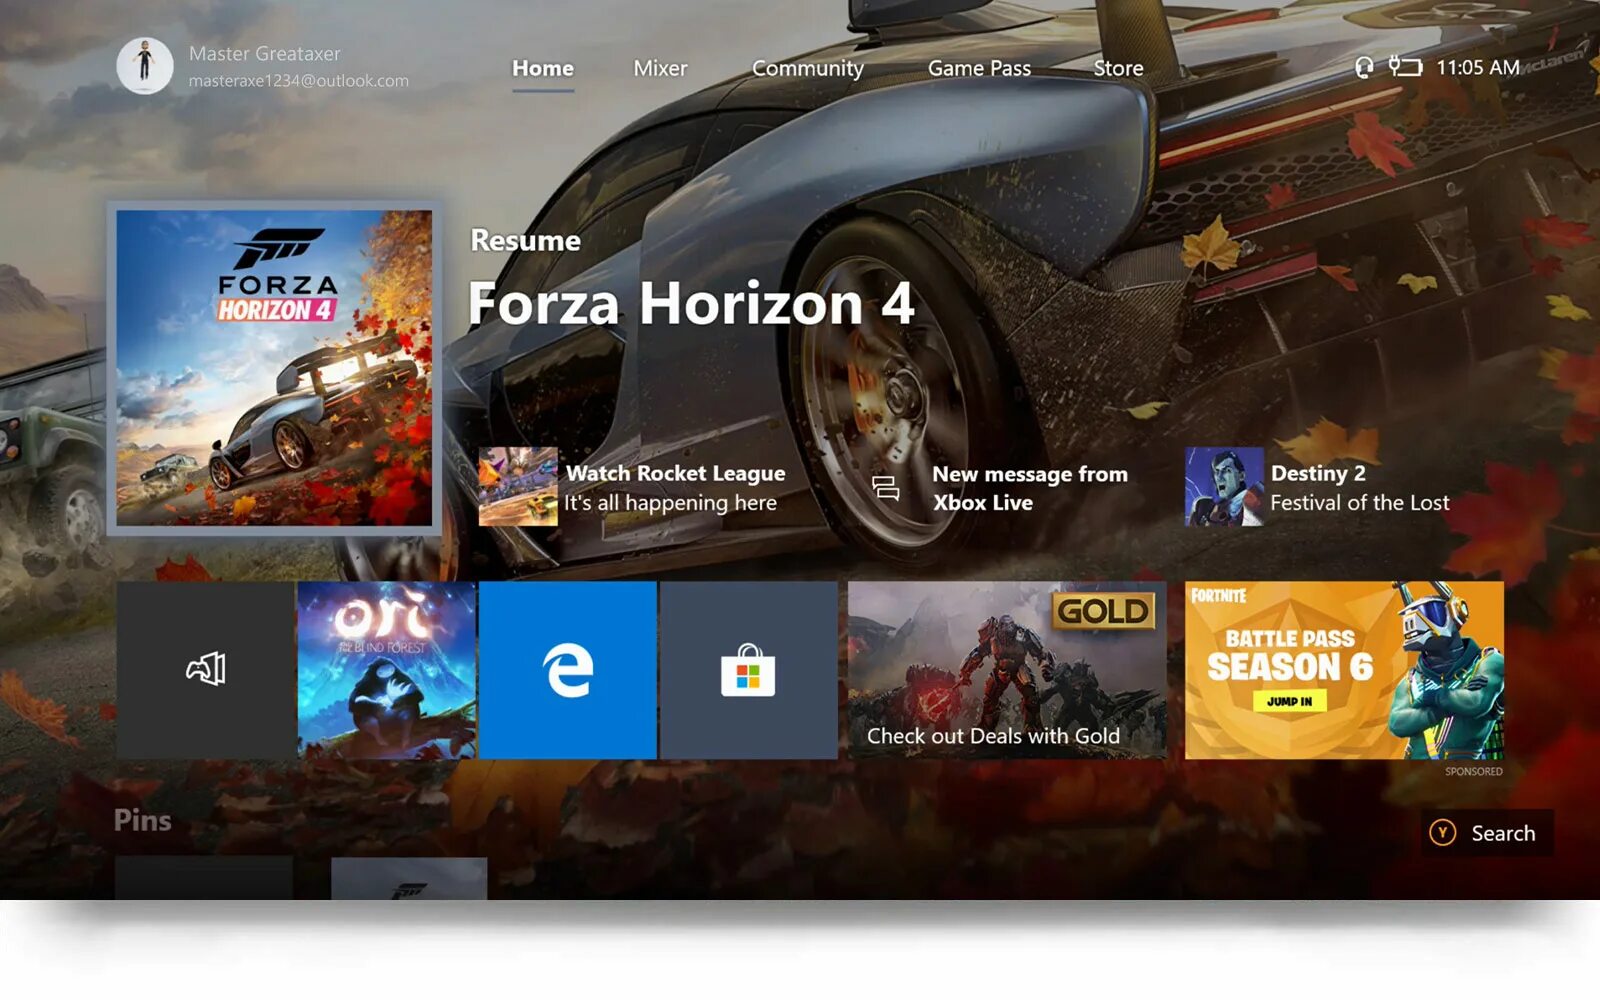 Forza 5 ps4. Forza Horizon 4 Xbox one. Диск Форза хорайзен 4 на ПС 4. Forza Horizon 4 на плейстейшен 4. Forza Horizon 4 Xbox one ps4.